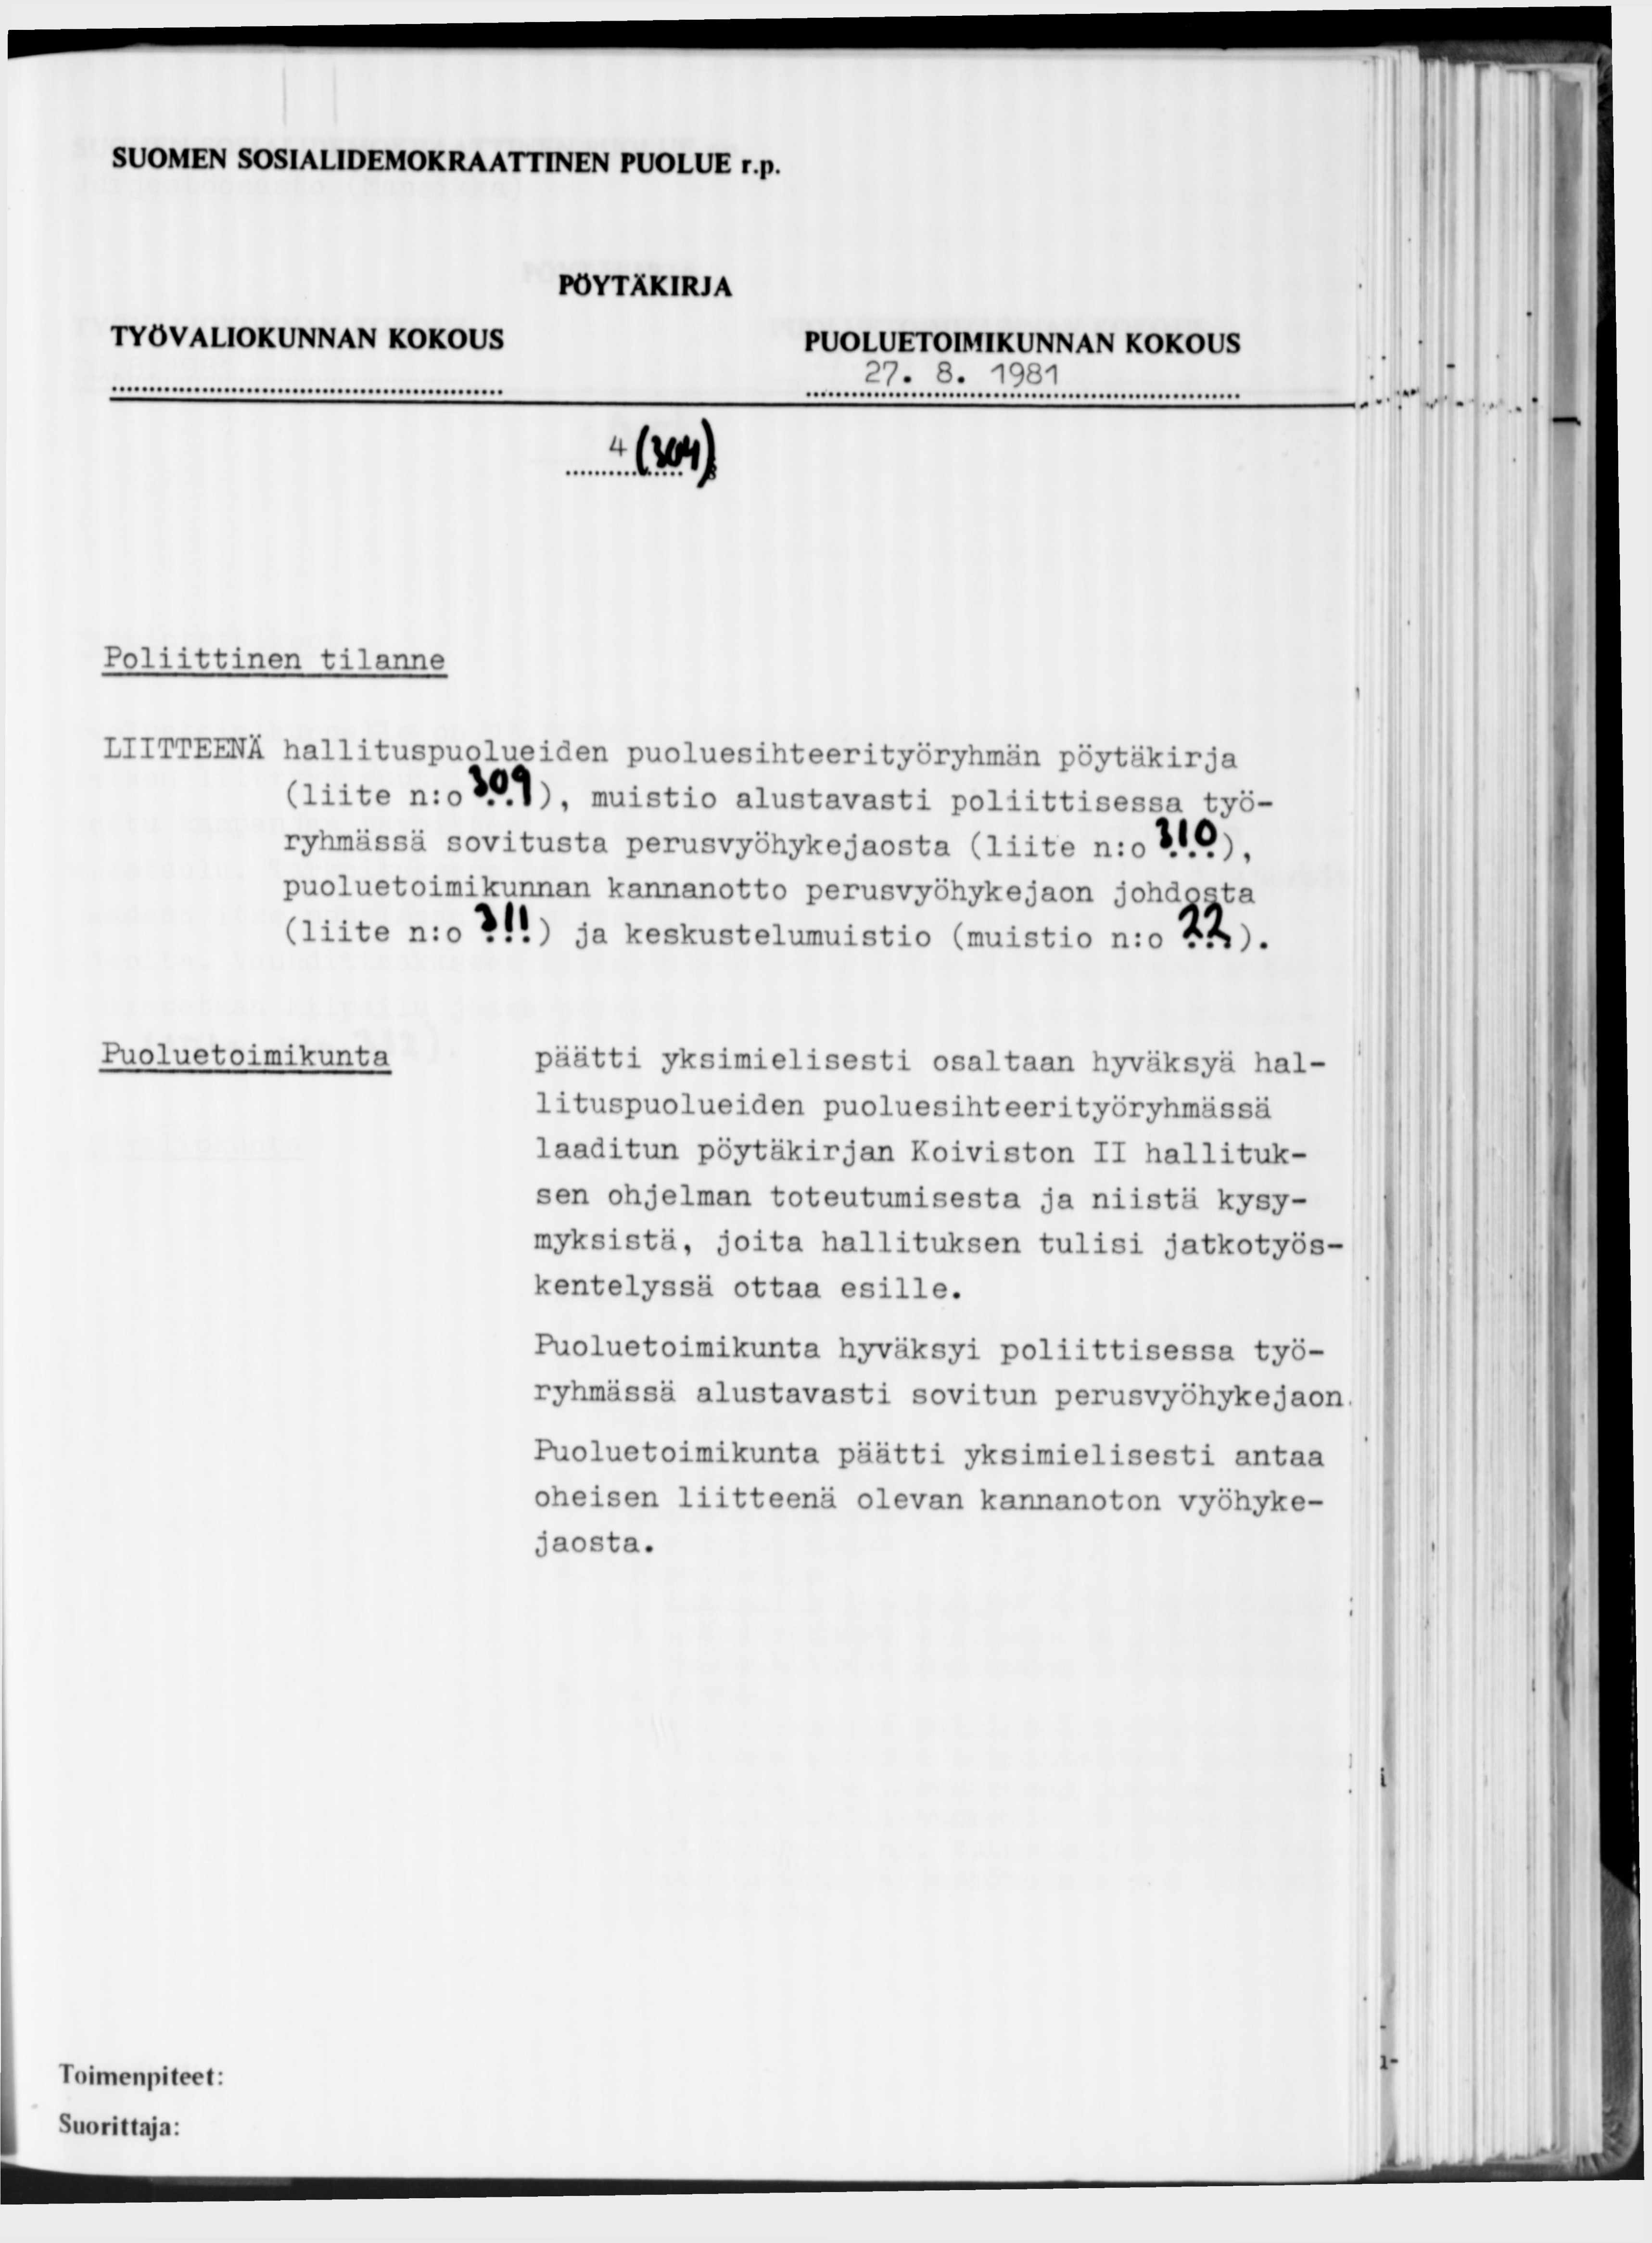 27-8. 1981 (» ) Poliittinen tilanne LIITTEENÄ hallituspuolueiden puoluesihteerityöryhmän pöytäkirja (liite n:o V.